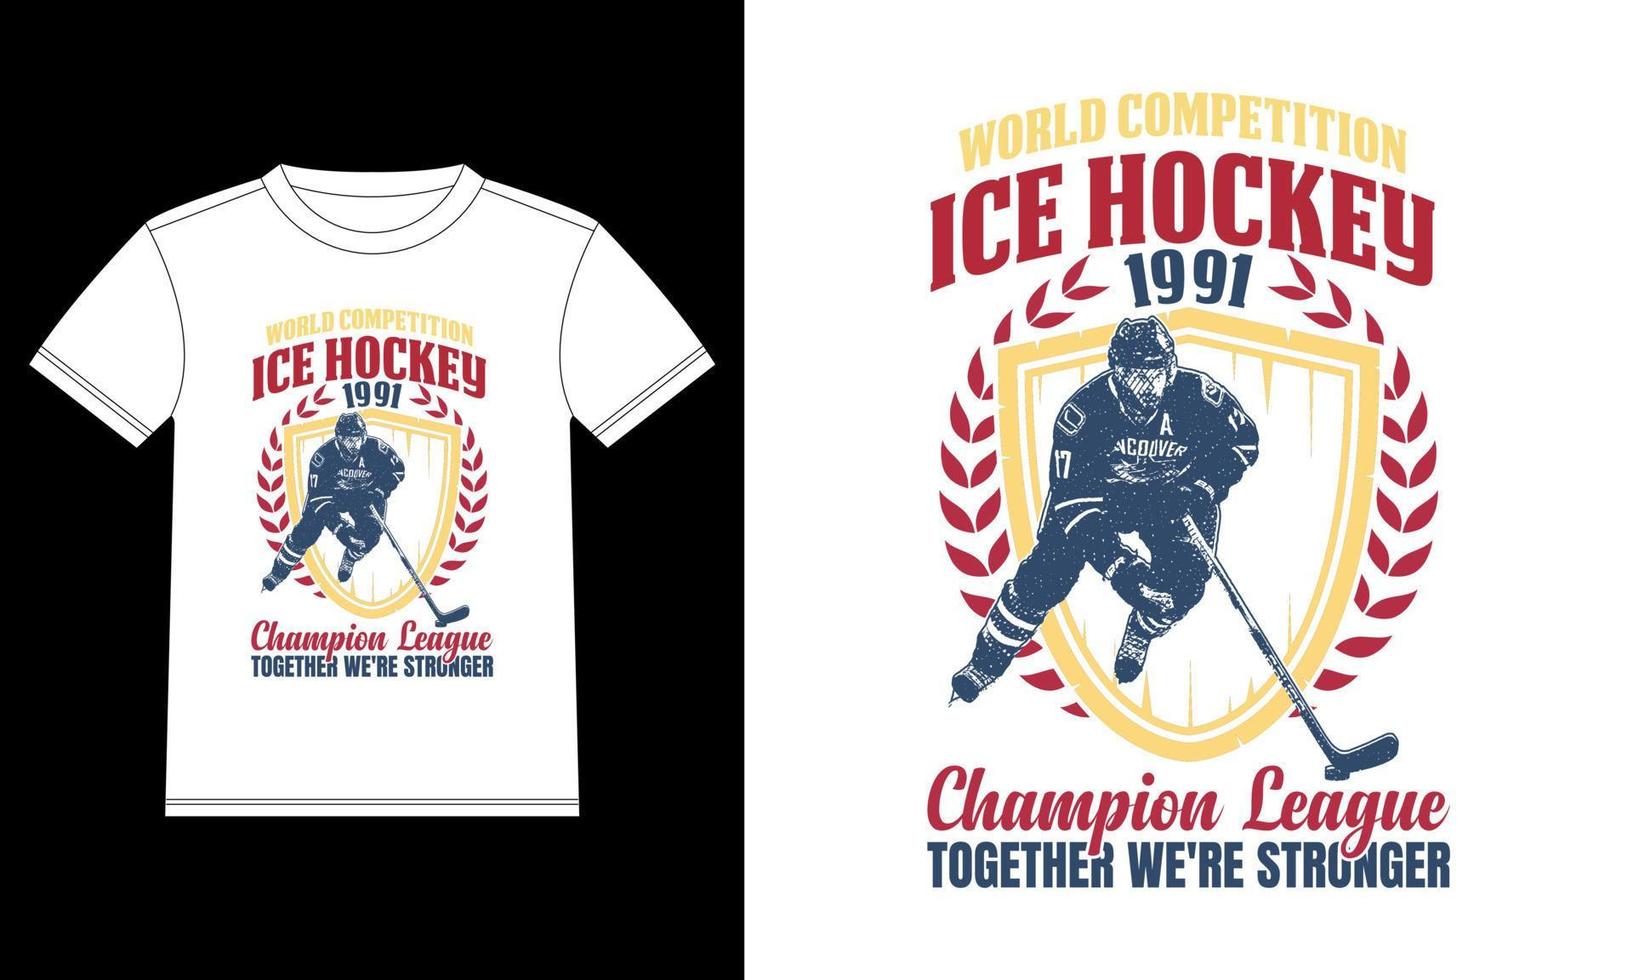 competición mundial de hockey sobre hielo de la liga campeona de 1991 juntos somos una plantilla de diseño de camisetas más fuerte, pegatina de ventana de coche, vaina, cubierta, fondo negro aislado vector